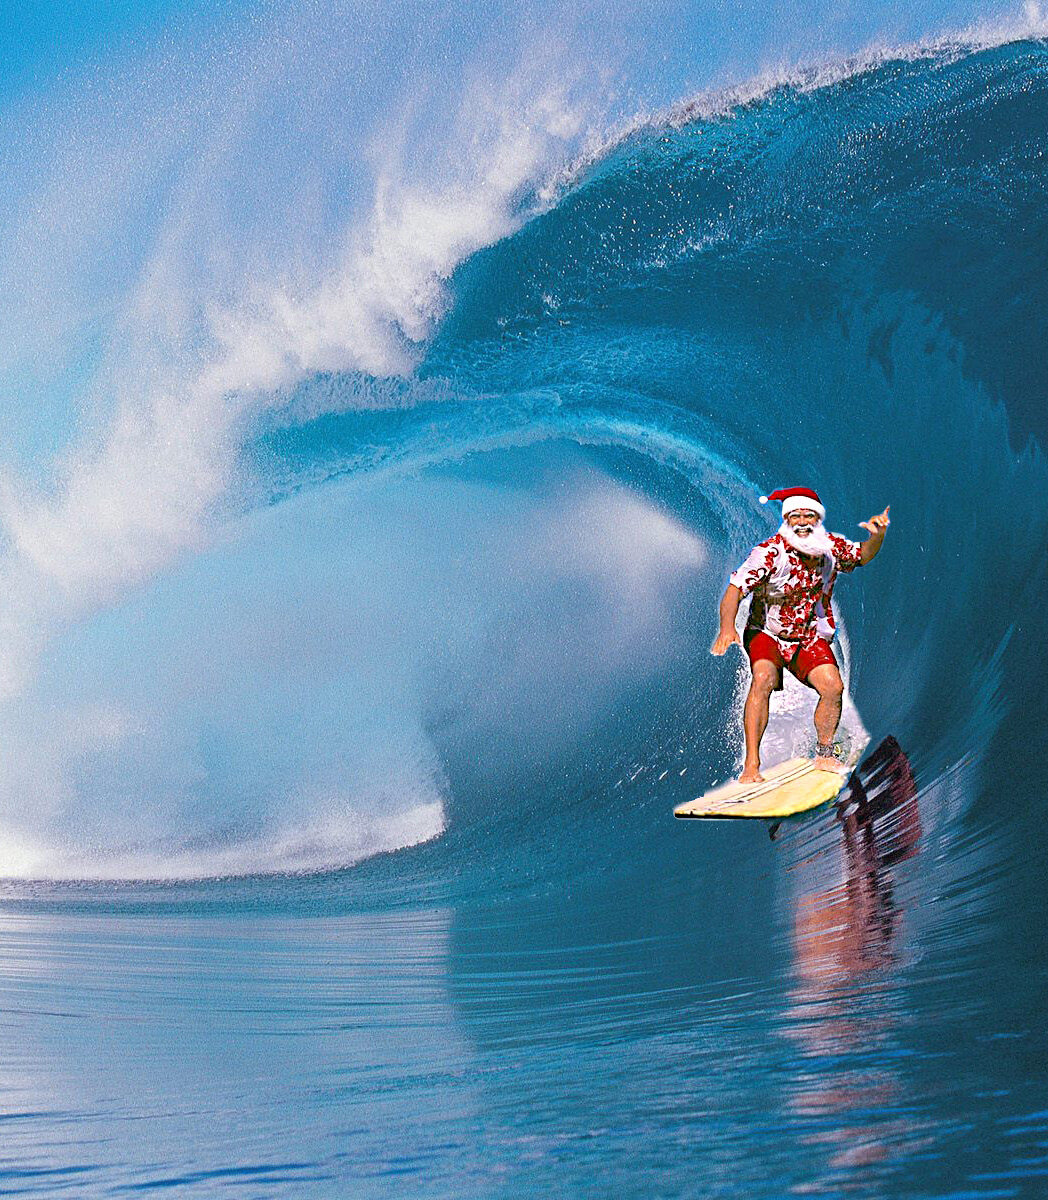 Santa-Surfing-Witchs-rock-tamarindo.jpg